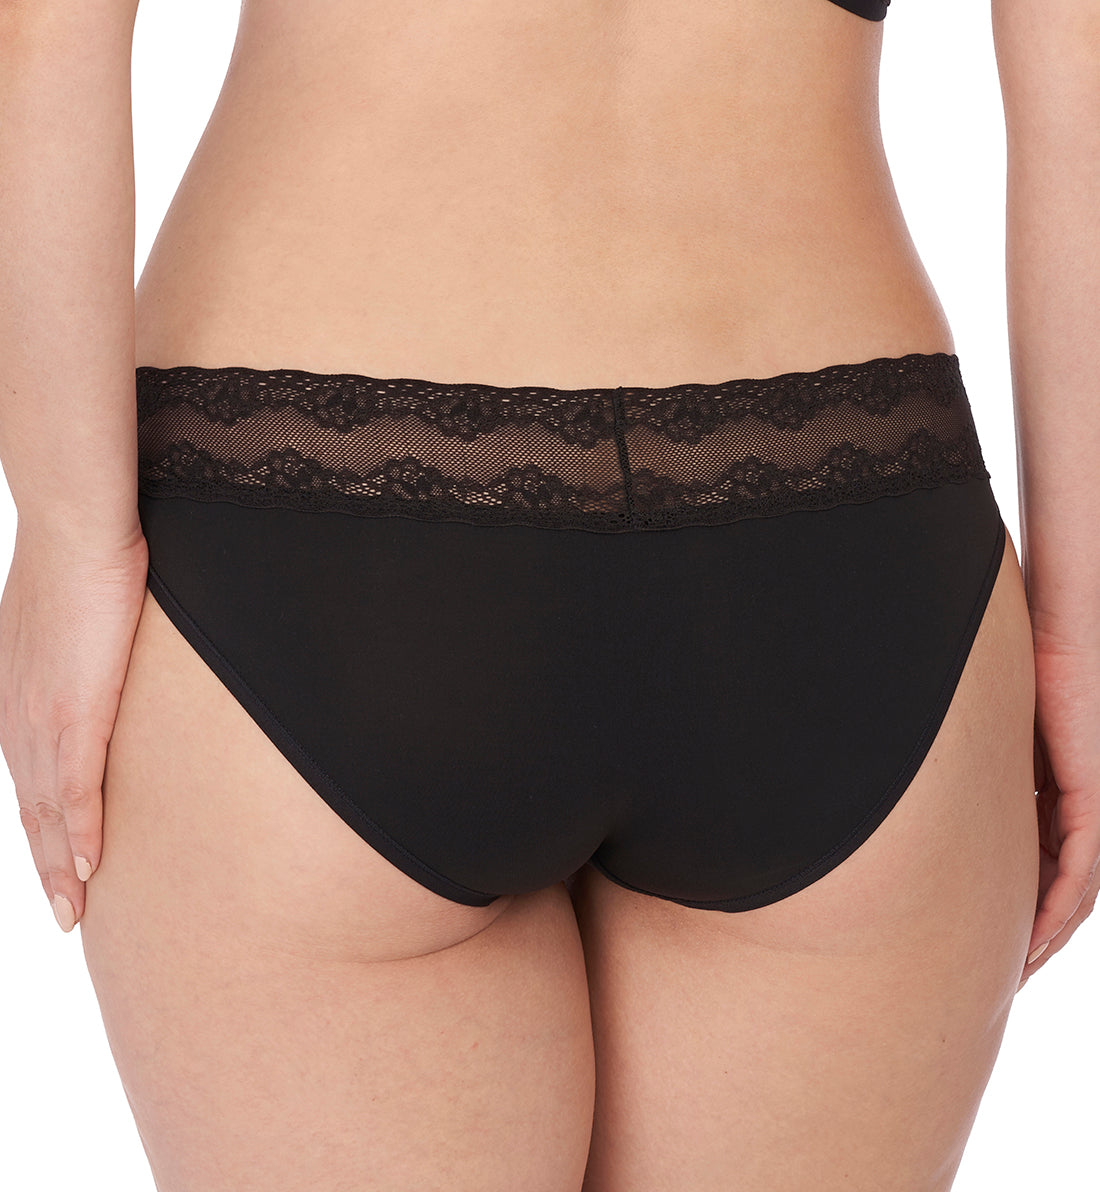 Natori Bliss Perfection V-Kini Panty (756092),O/S,Black - Black,One Size